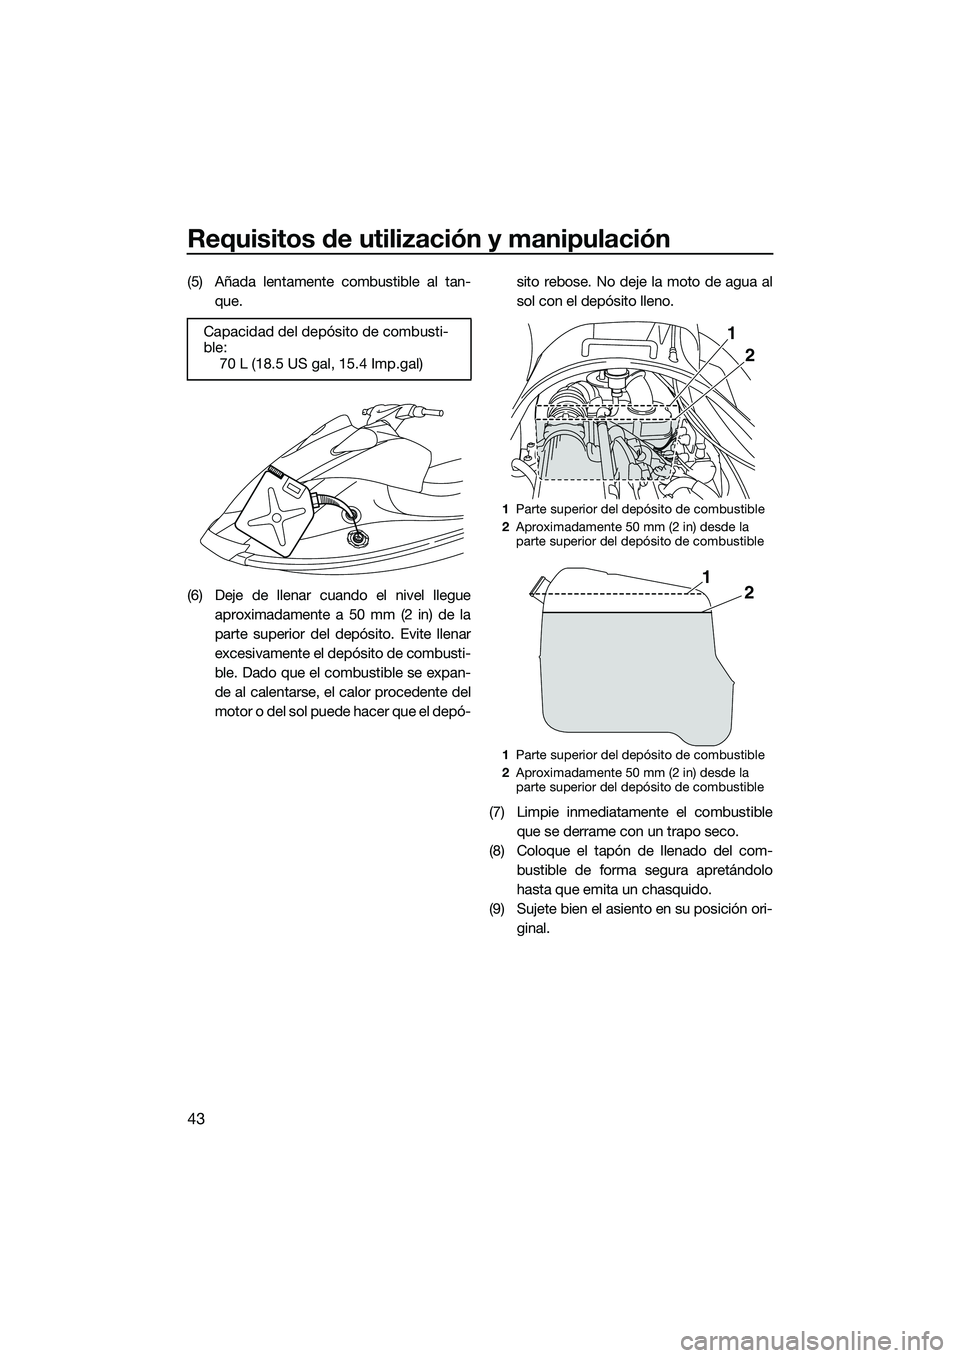 YAMAHA V1 2015  Manuale de Empleo (in Spanish) Requisitos de utilización y manipulación
43
(5) Añada lentamente combustible al tan-que.
(6) Deje de llenar cuando el nivel llegue aproximadamente a 50 mm (2 in) de la
parte superior del depósito.